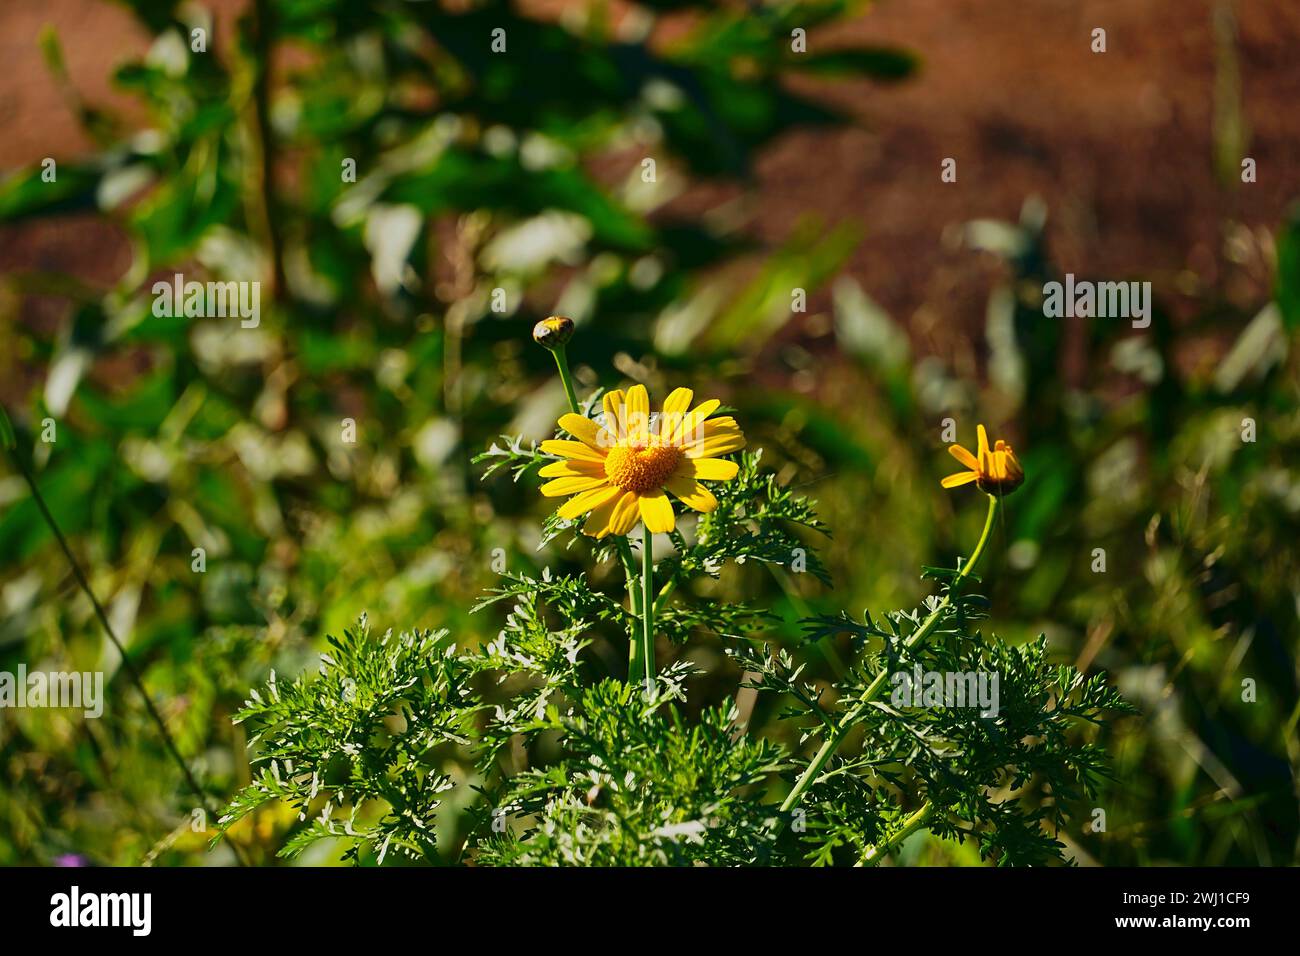 Eine Krone Gänseblümchen oder Glebionis coronaria oder Chrysanthemum coronarium, gelbe Blüte Stockfoto